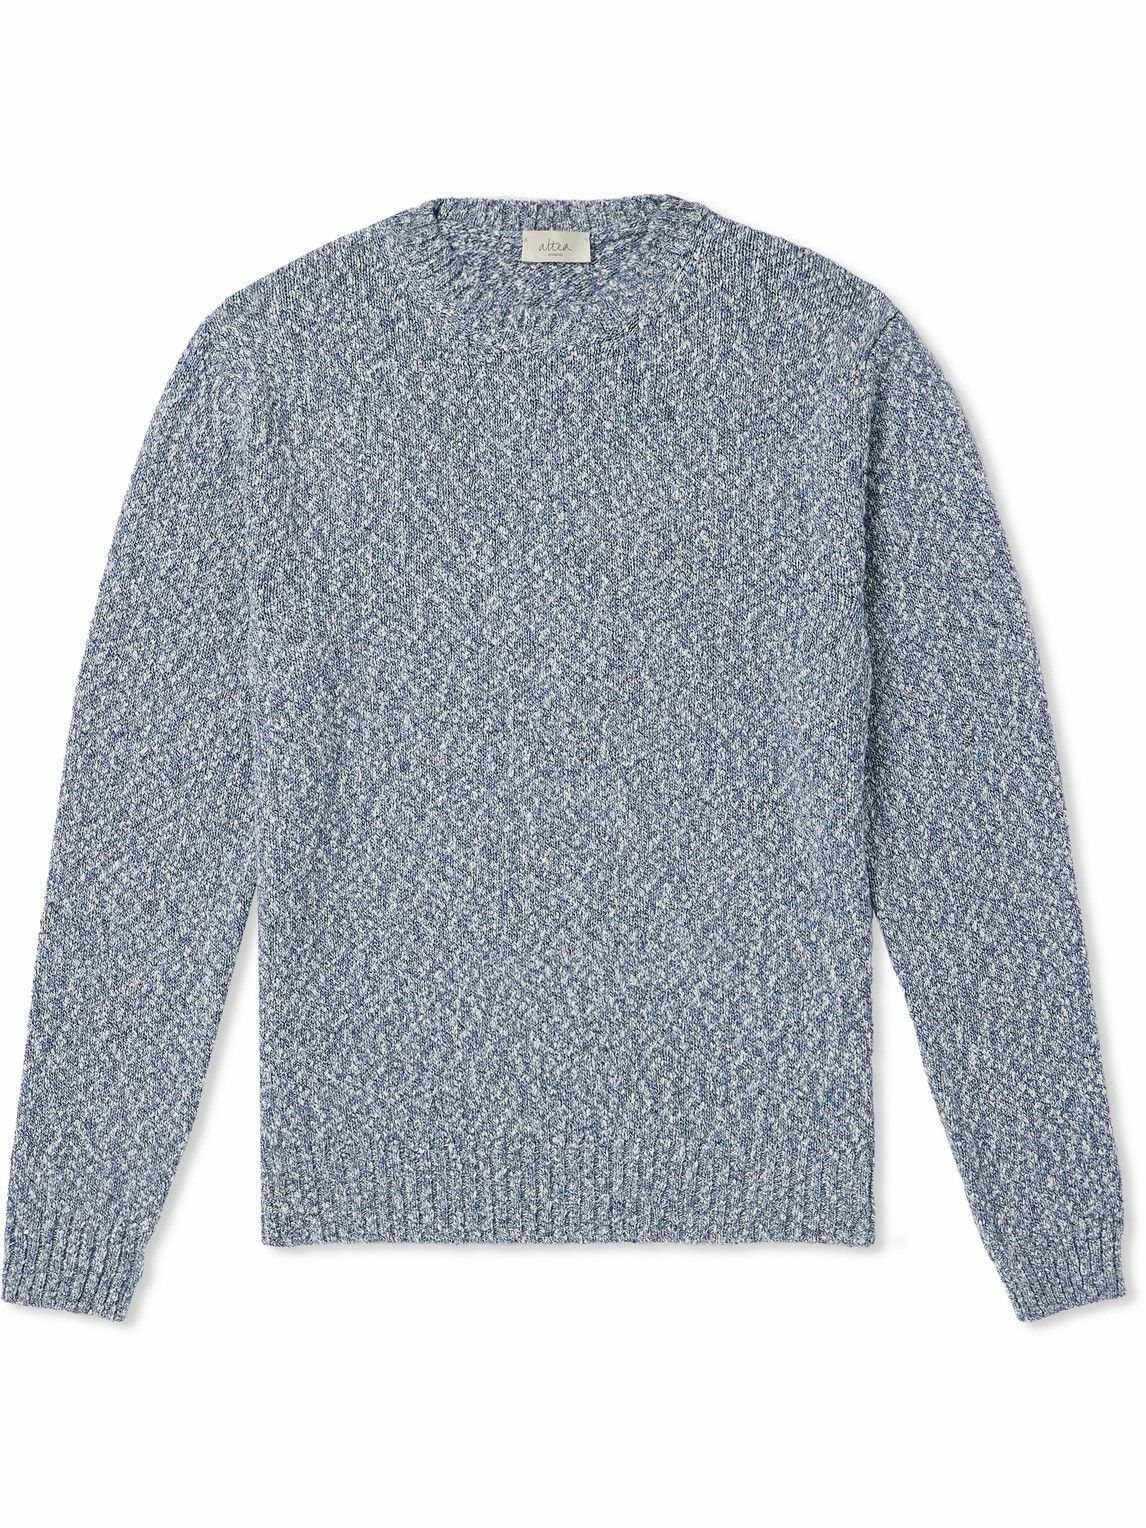 Photo: Altea - Mélange Cotton Sweater - Blue